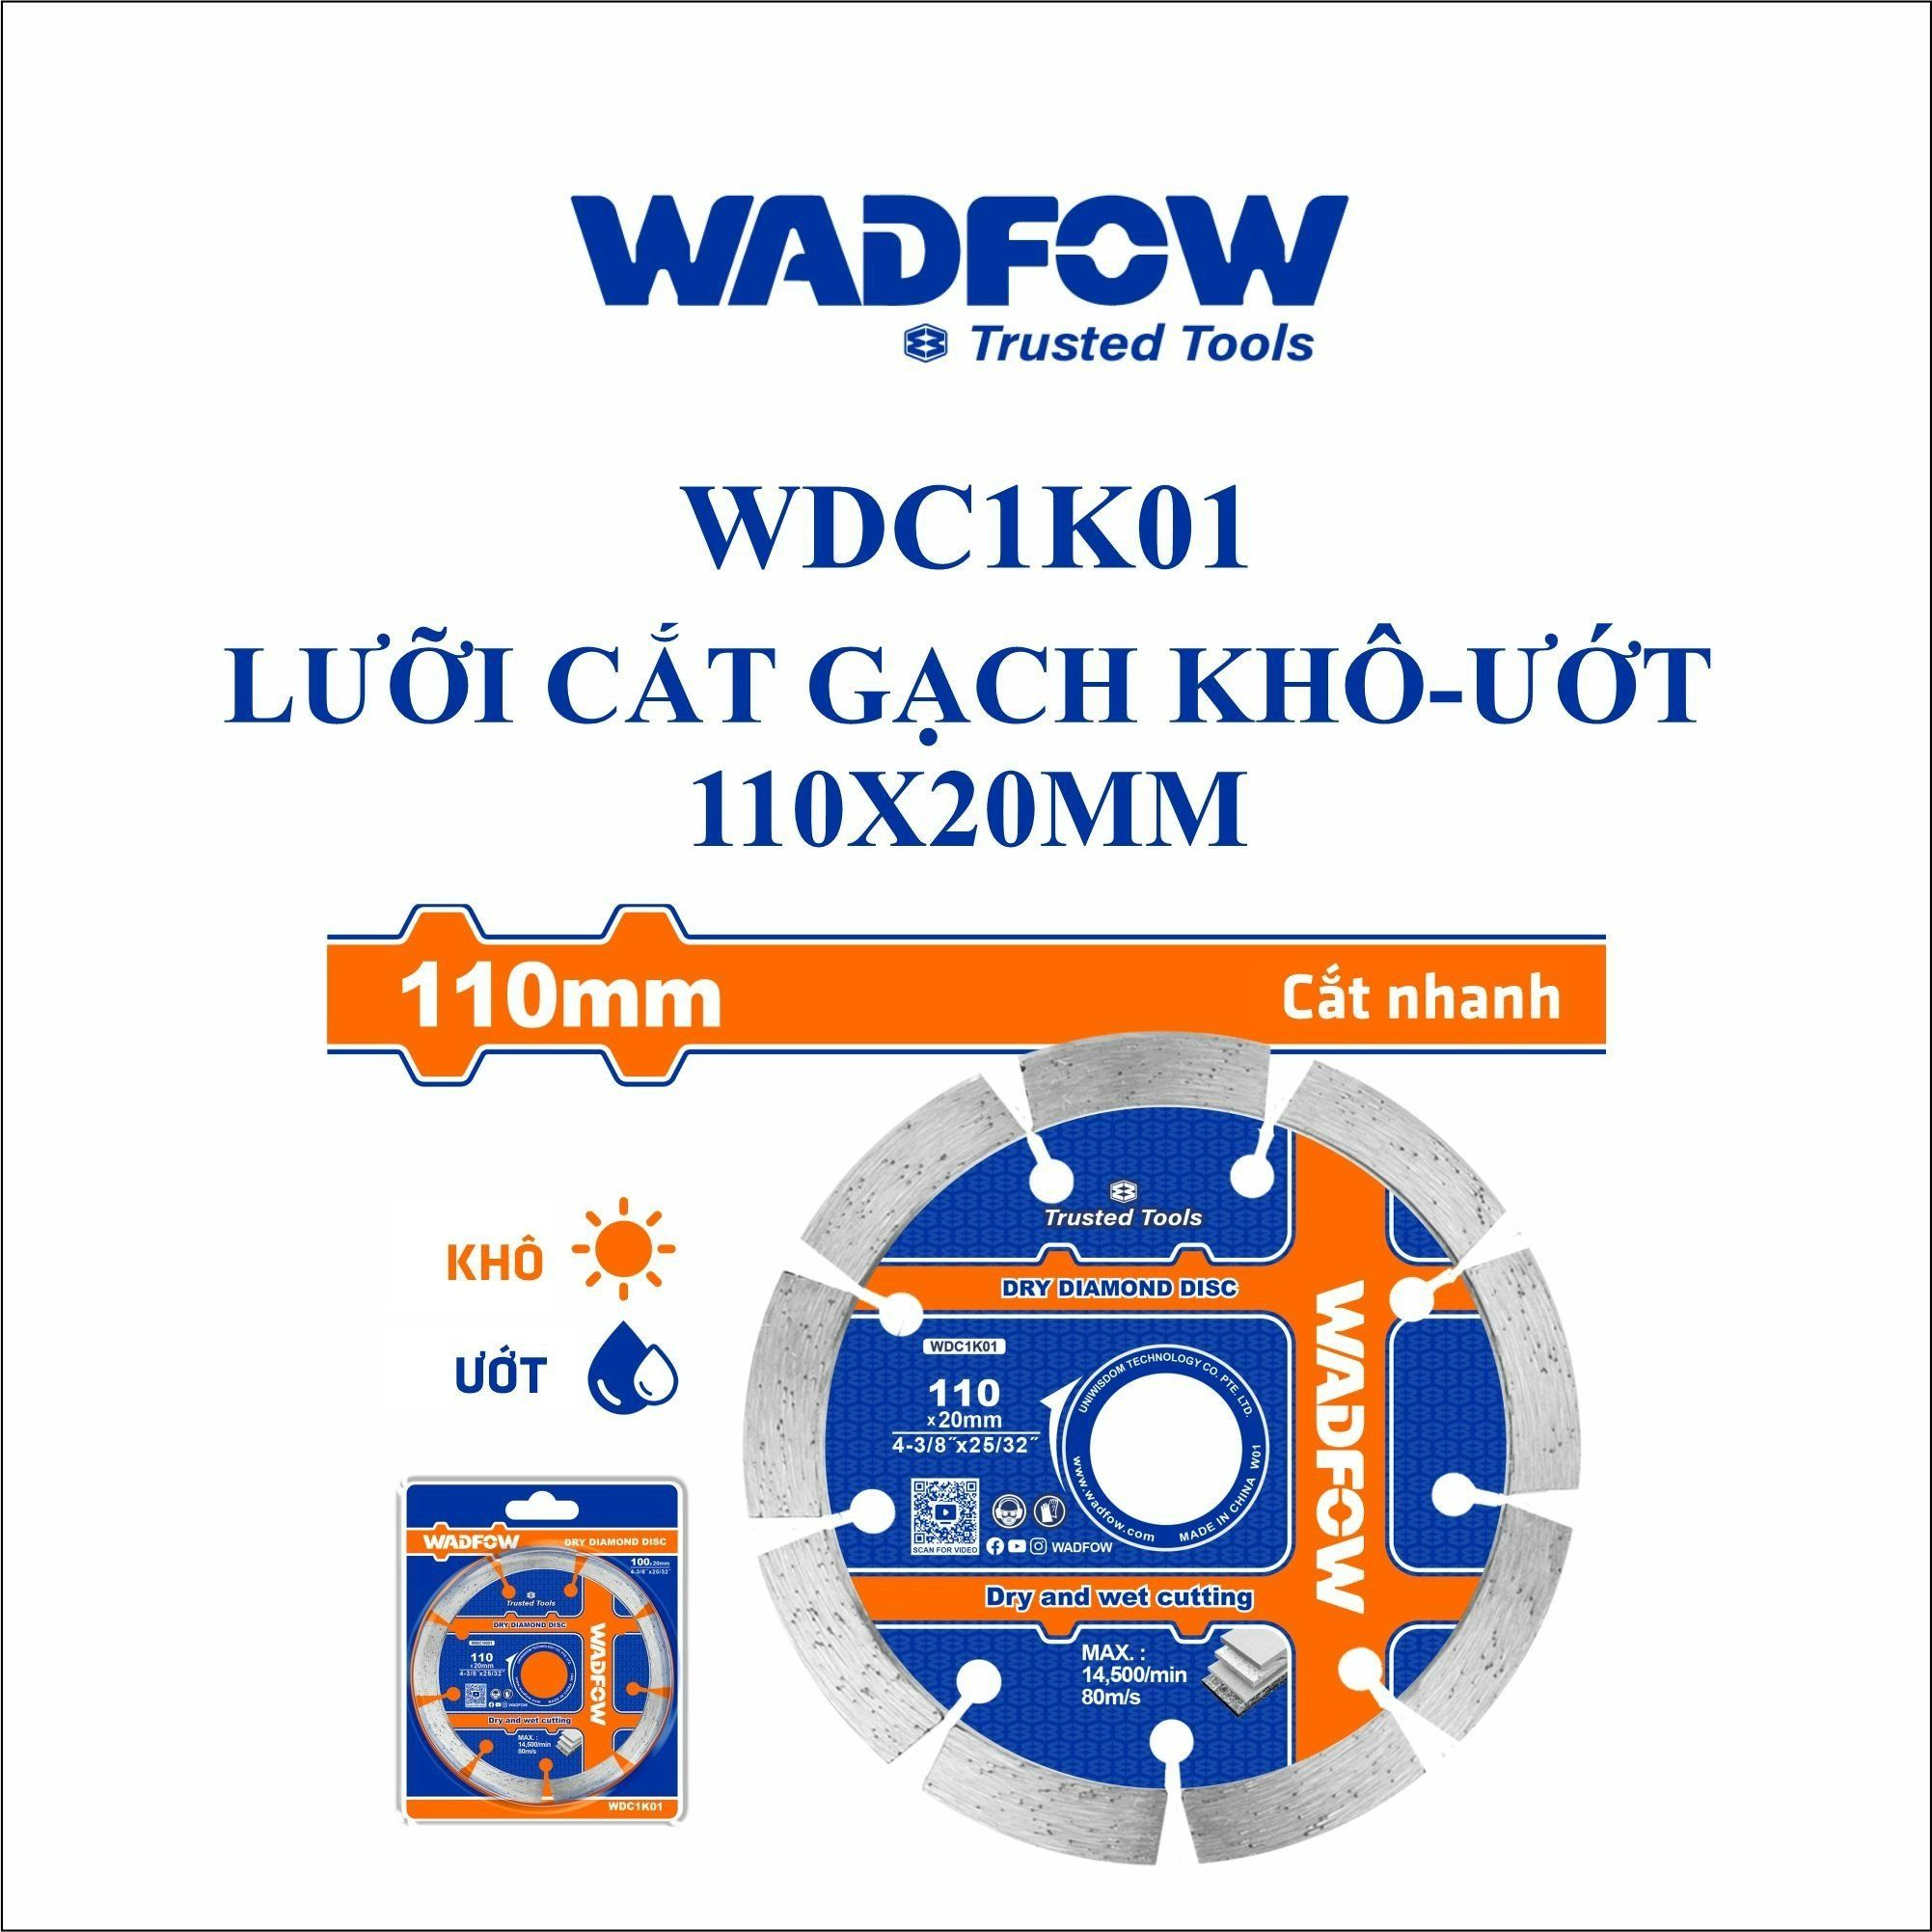  Lưỡi cắt gạch khô-ướt 110x20mm WADFOW WDC1K01 